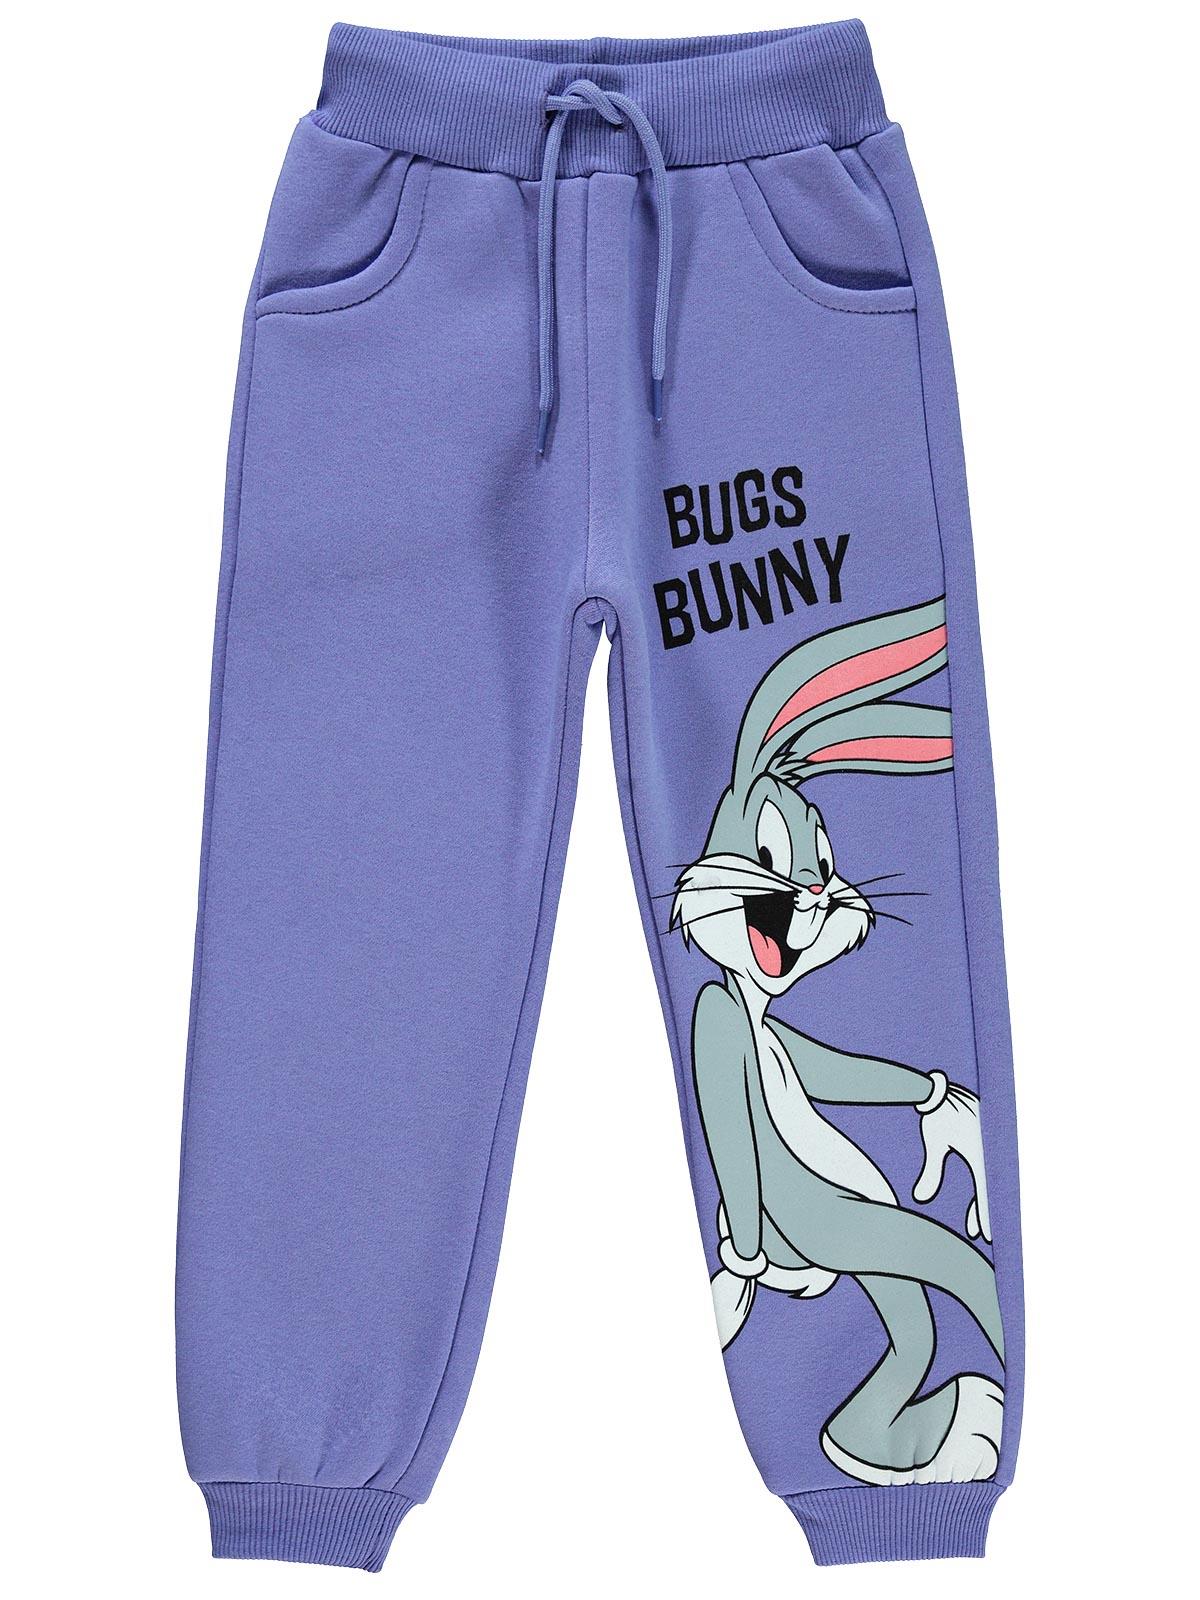 Bugs Bunny Kız Çocuk Eşofman Altı 6-9 Yaş Mor